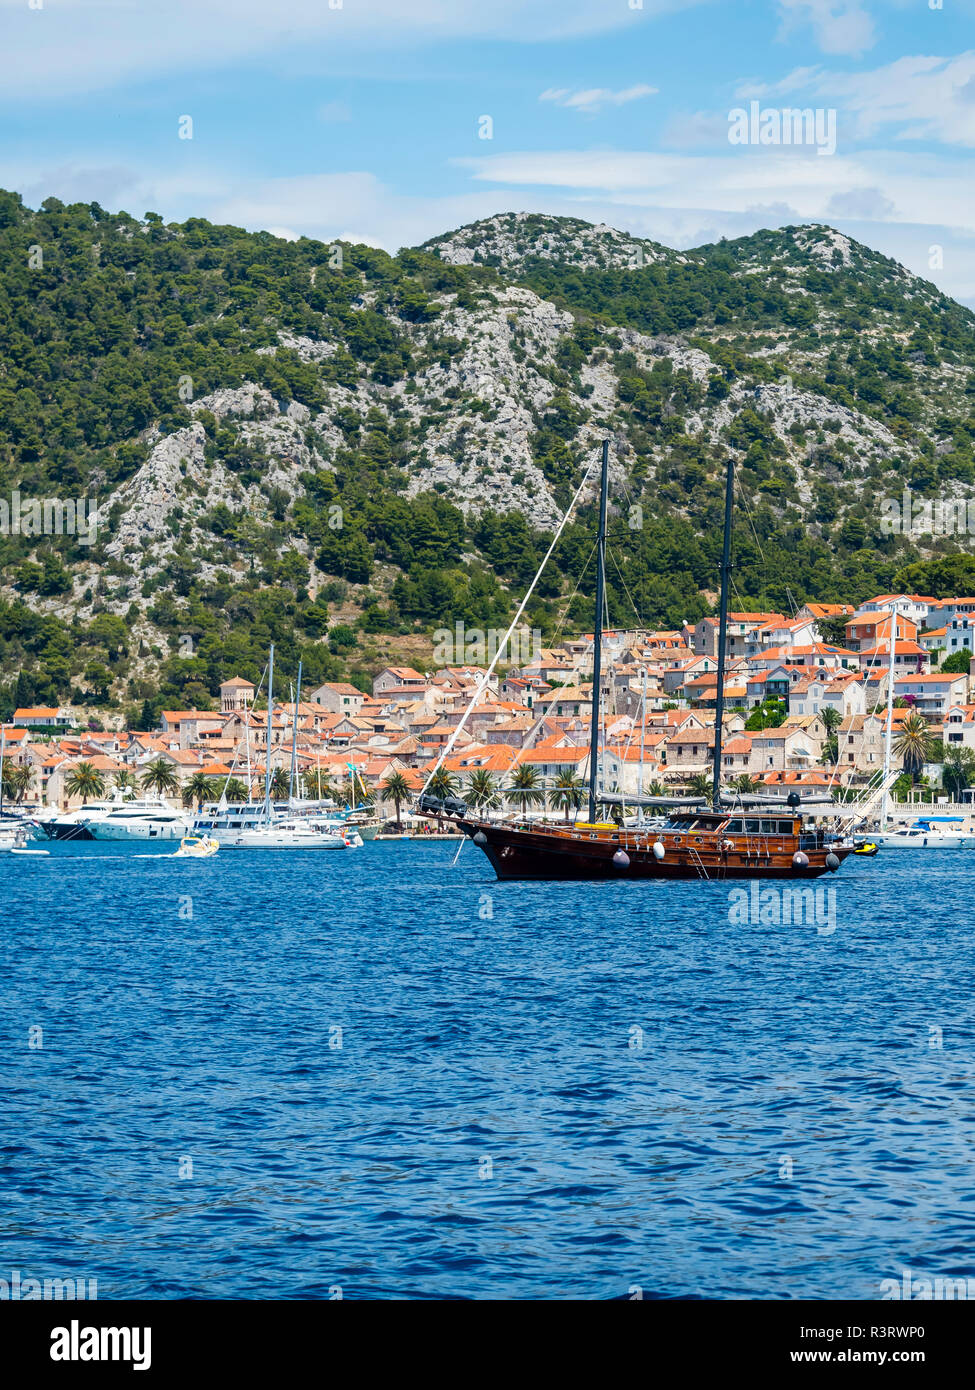 Croacia, Mar Adriático, Dalmacia, Hvar, ciudad costera y barco tradicional Foto de stock